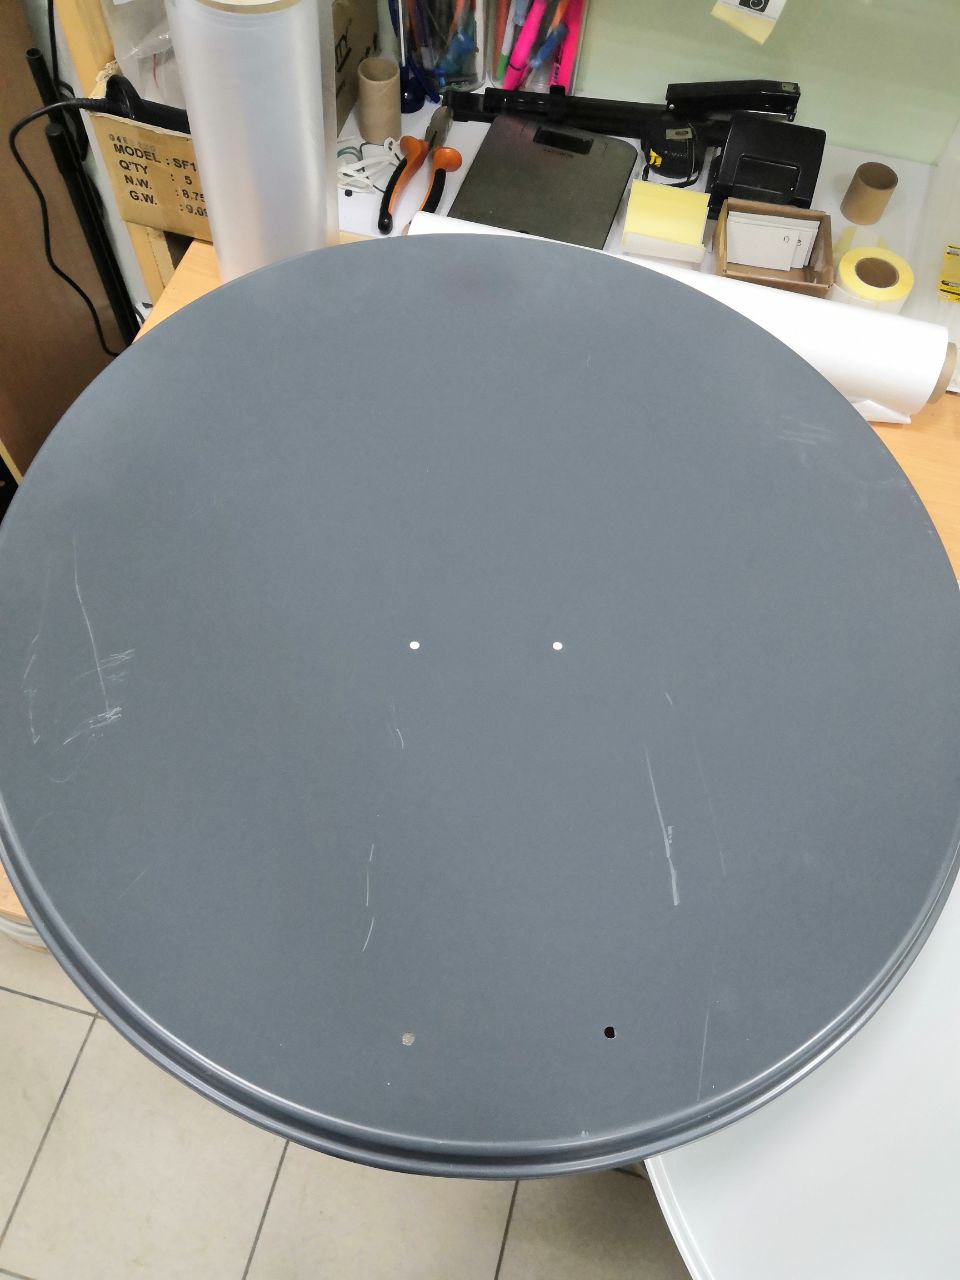 Детальное изображение товара "Спутниковая антенна (тарелка) GIBERTINI PE65A AZ/EL Уценка" из каталога оборудования Антенна76